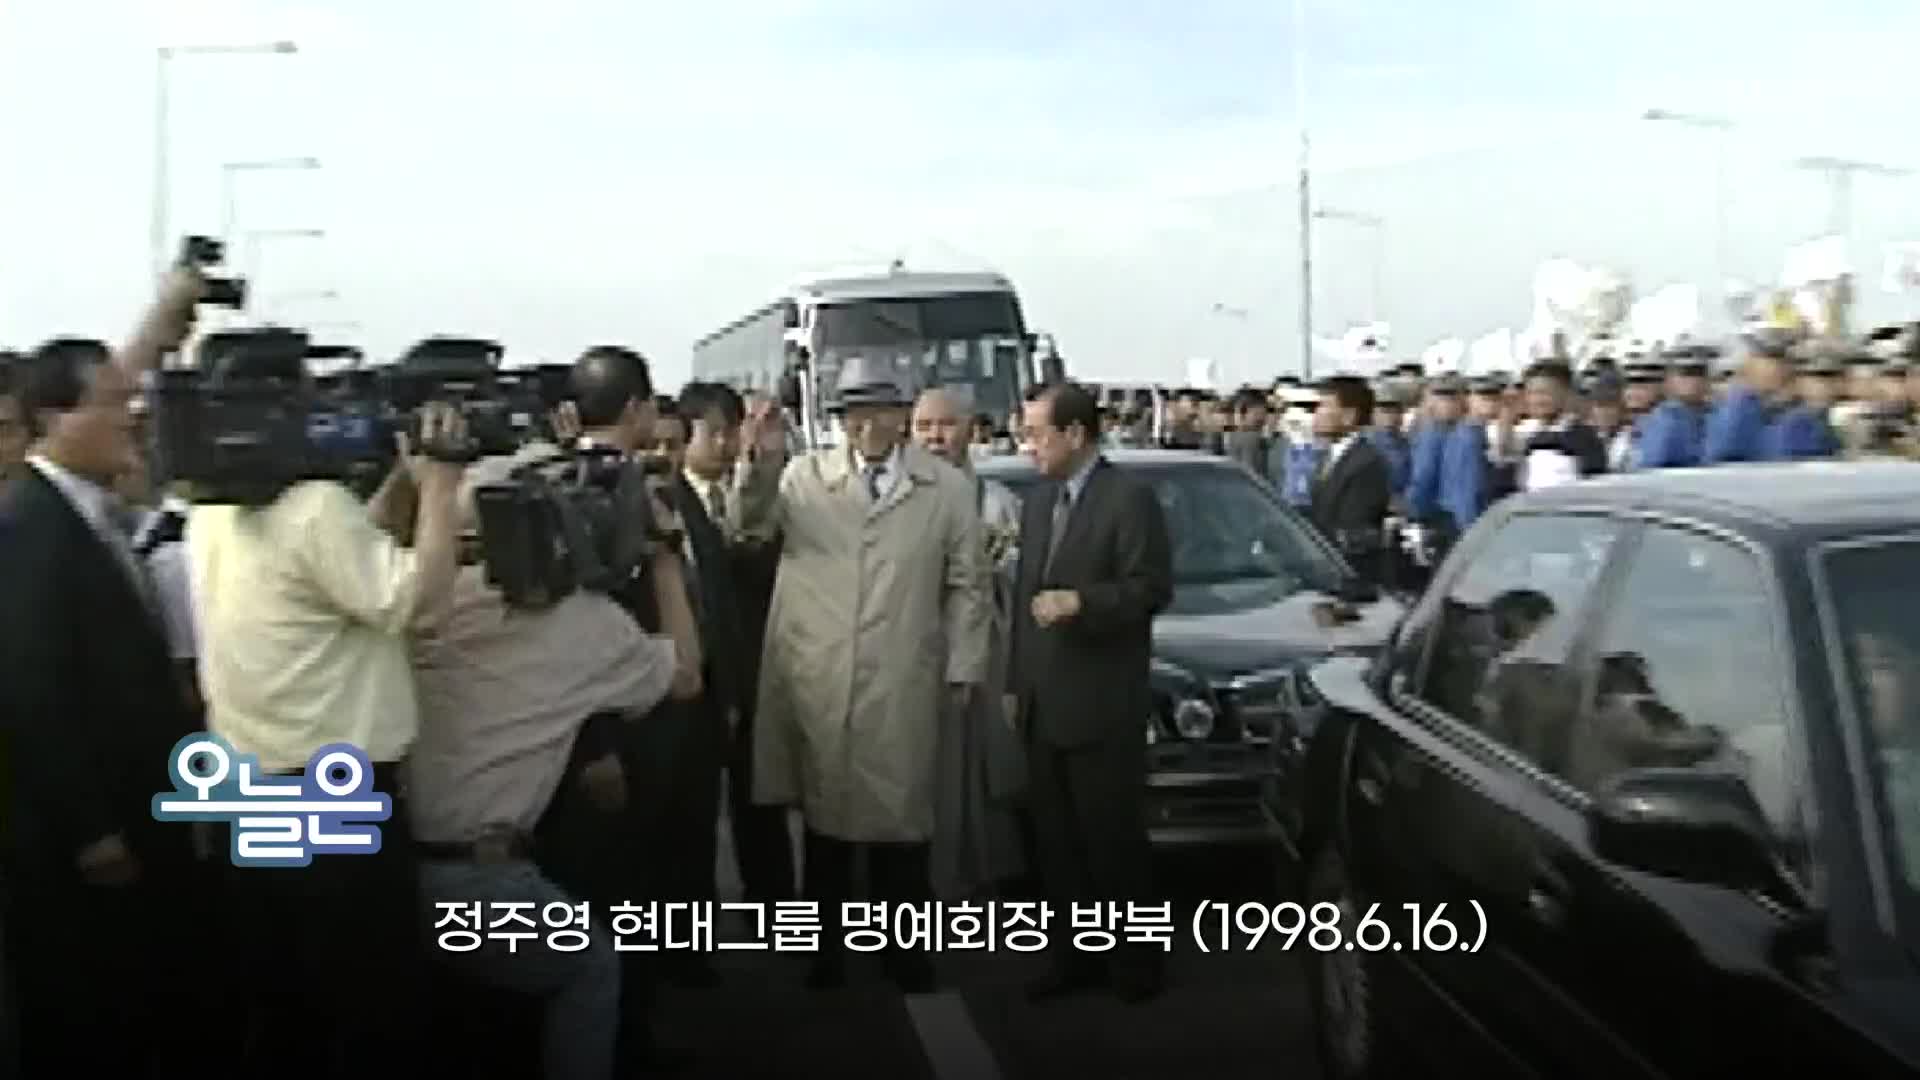 [오늘은] 정주영 현대그룹 명예회장 방북 (1998.6.16.)